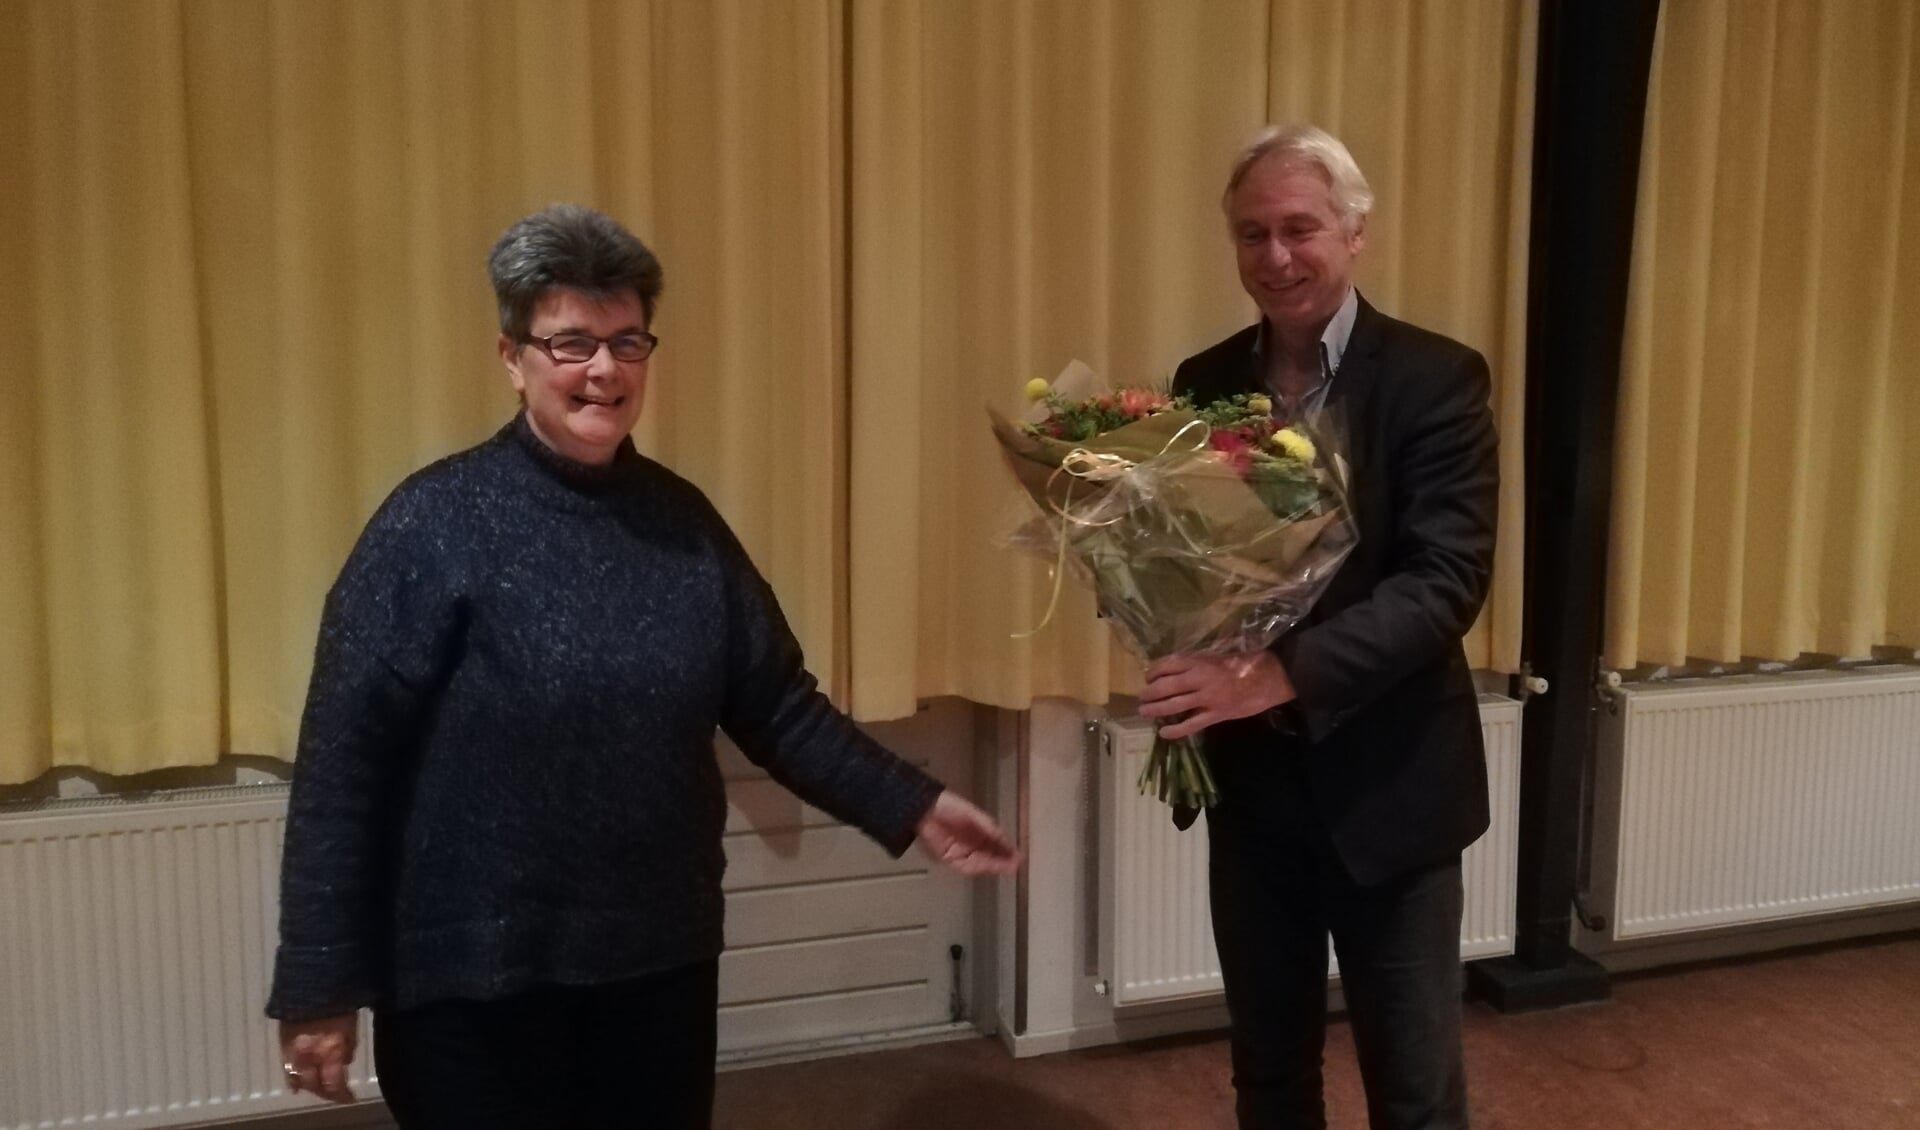 De nieuwe lijsttrekker Lukas Koops krijgt de bloemen overhandigd door fractievoorzitter Marie-Claire Neesen. (foto: GroenLinks Aa en Hunze)